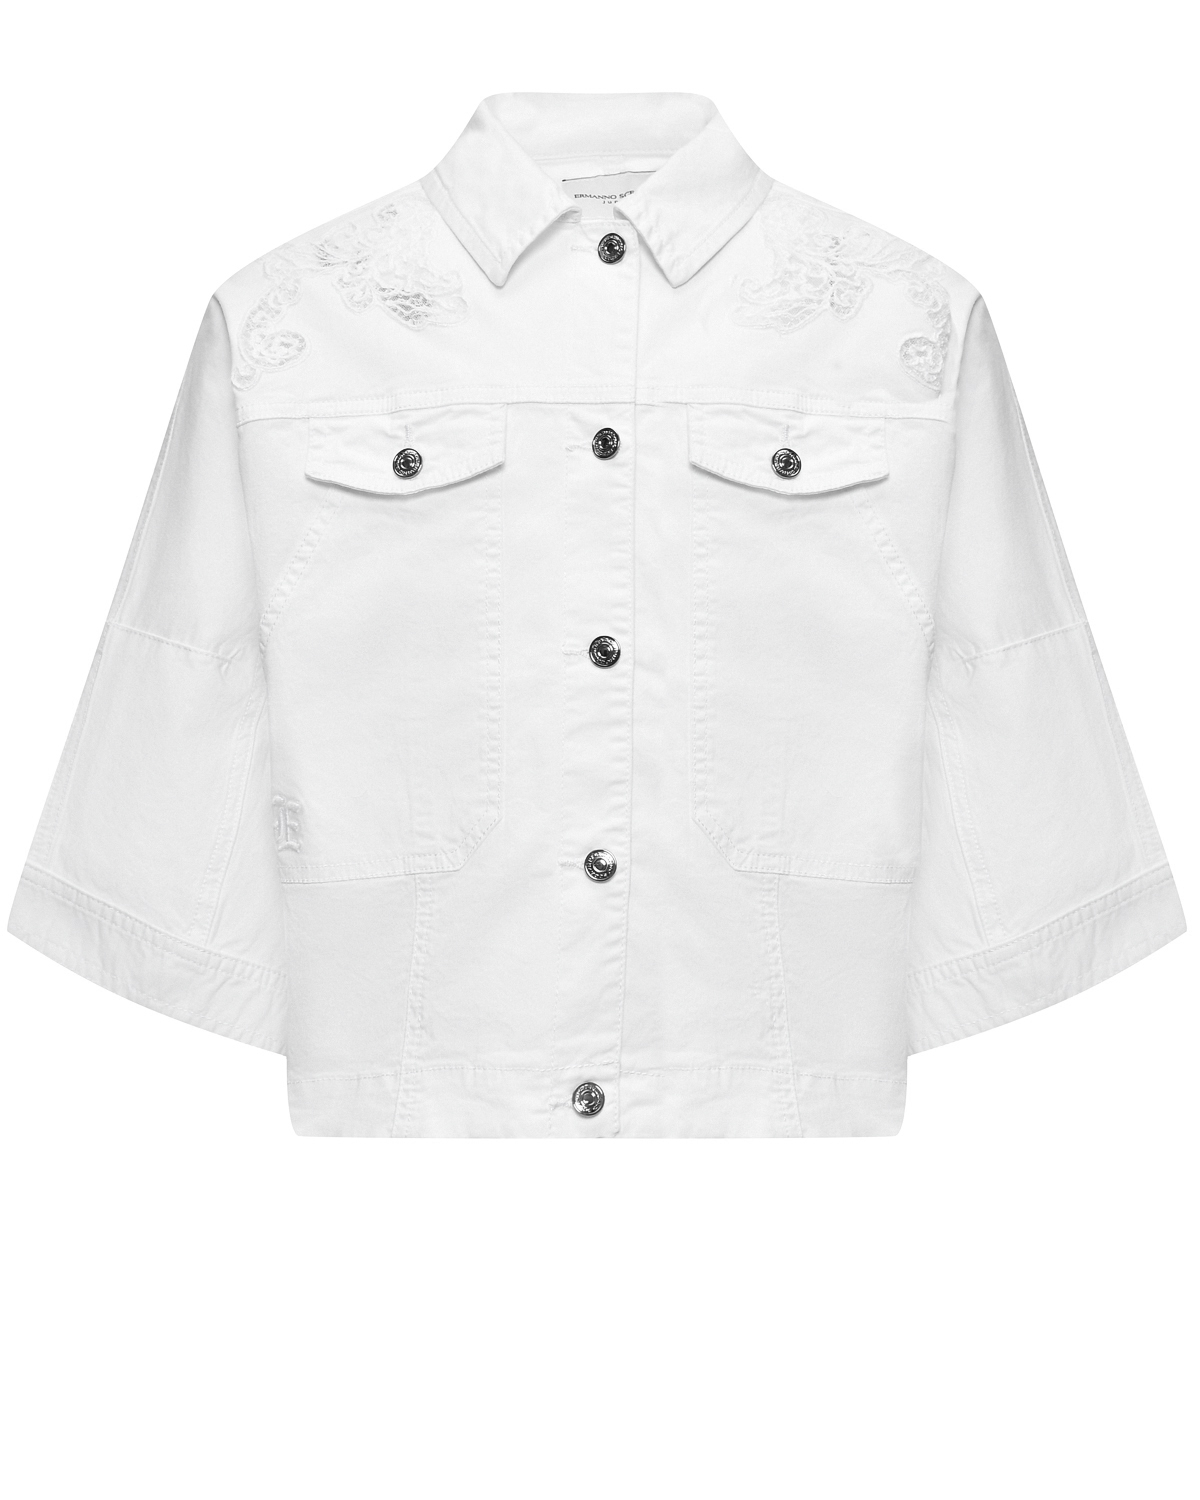 Джинсовая куртка с кружевной отделкой Ermanno Scervino, размер 176, цвет белый